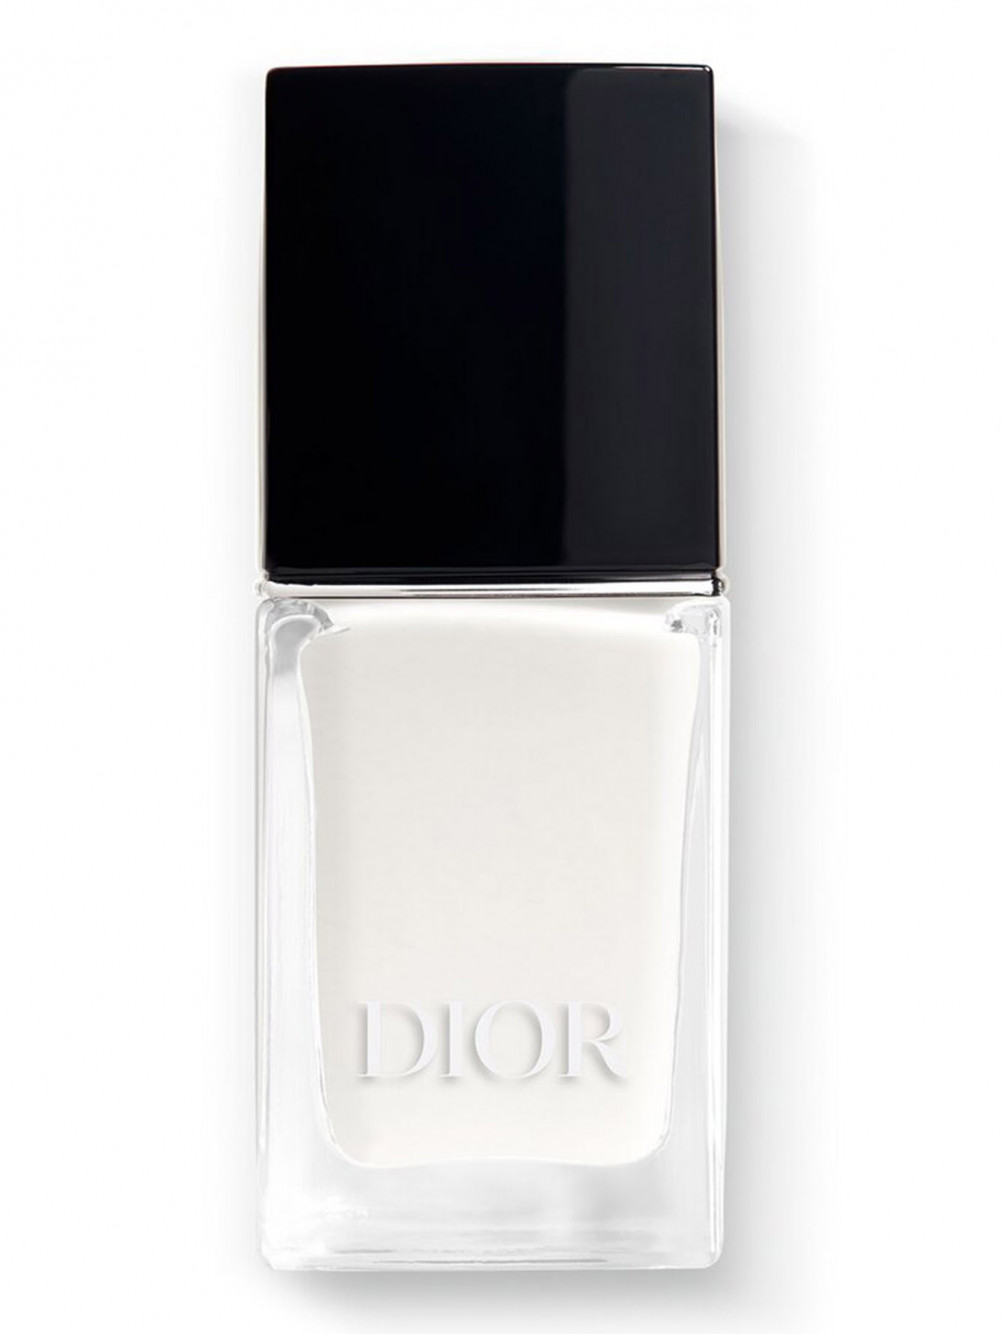 Лак для ногтей с эффектом гелевого покрытия Dior Vernis, 007 Жасмин, 10 мл - Общий вид